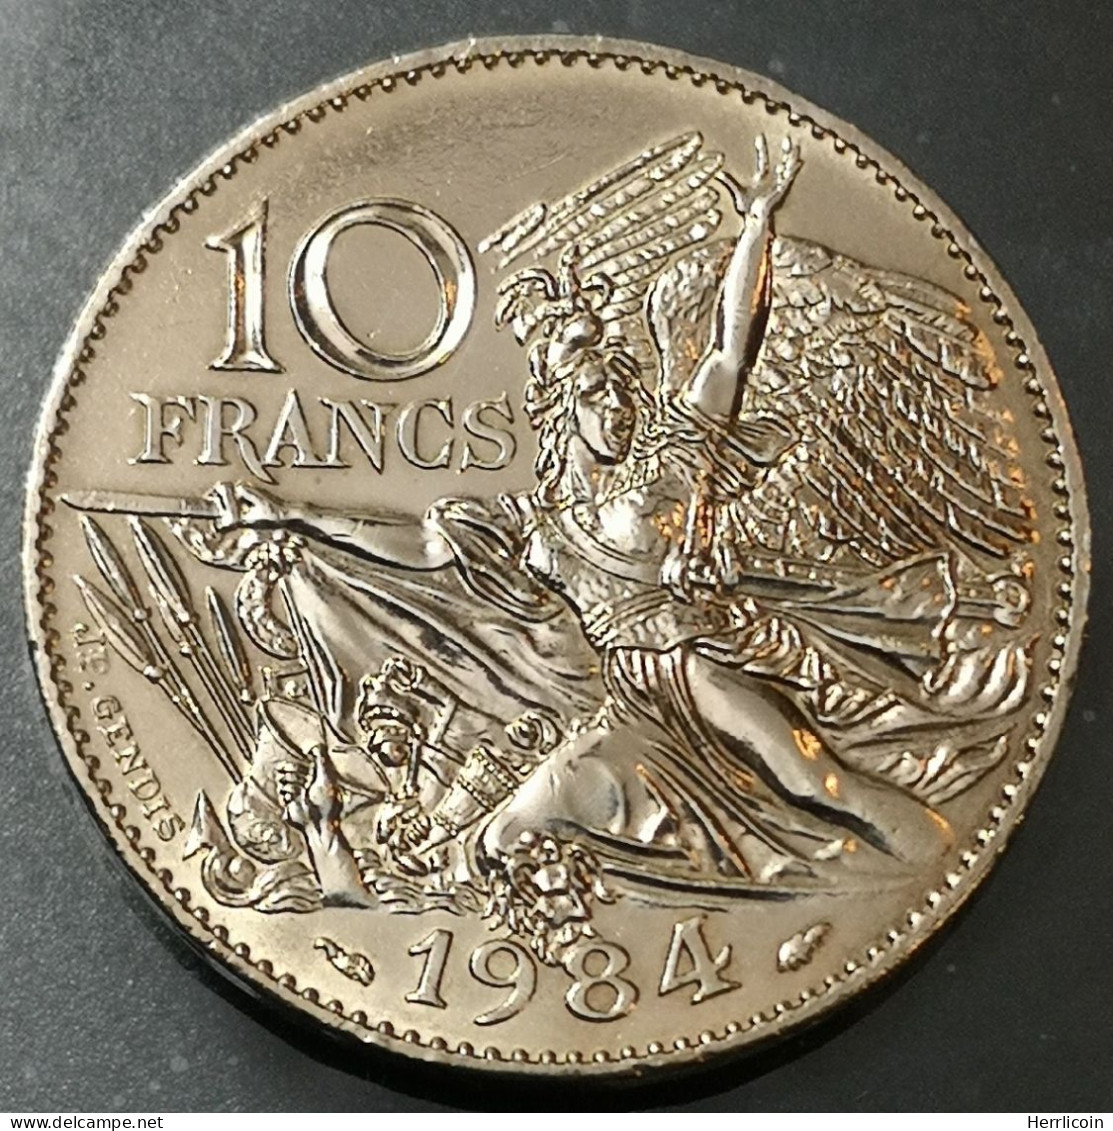 Monnaie France - 1984 - 10 Francs François Rude - Tranche A - Commémoratives